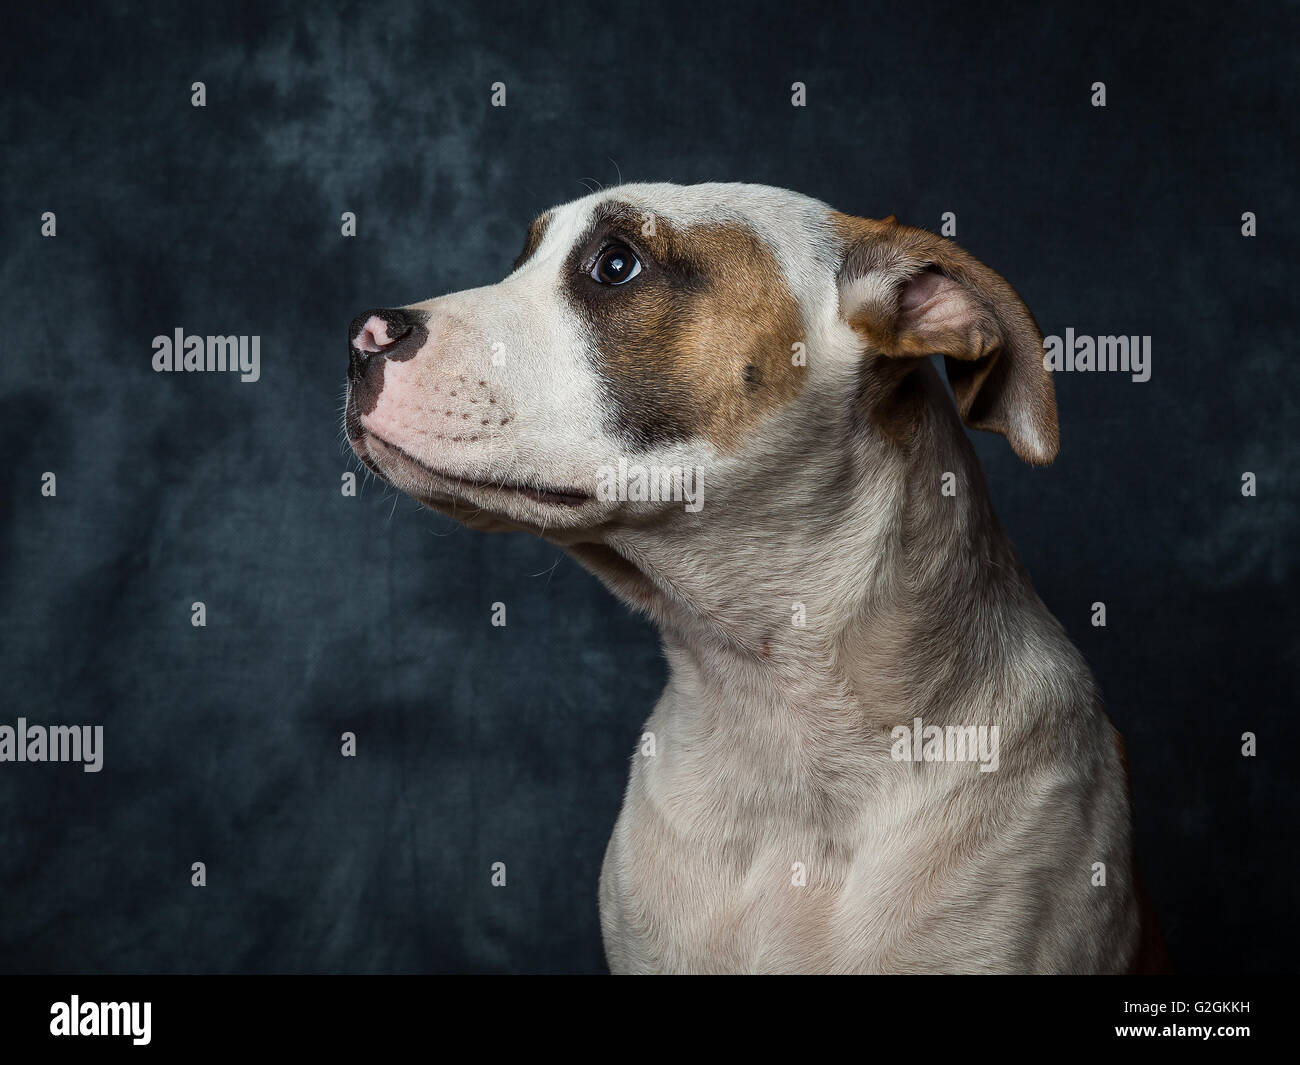 Yuna l'American Bulldog chiot âgé de seulement 5 mois Banque D'Images